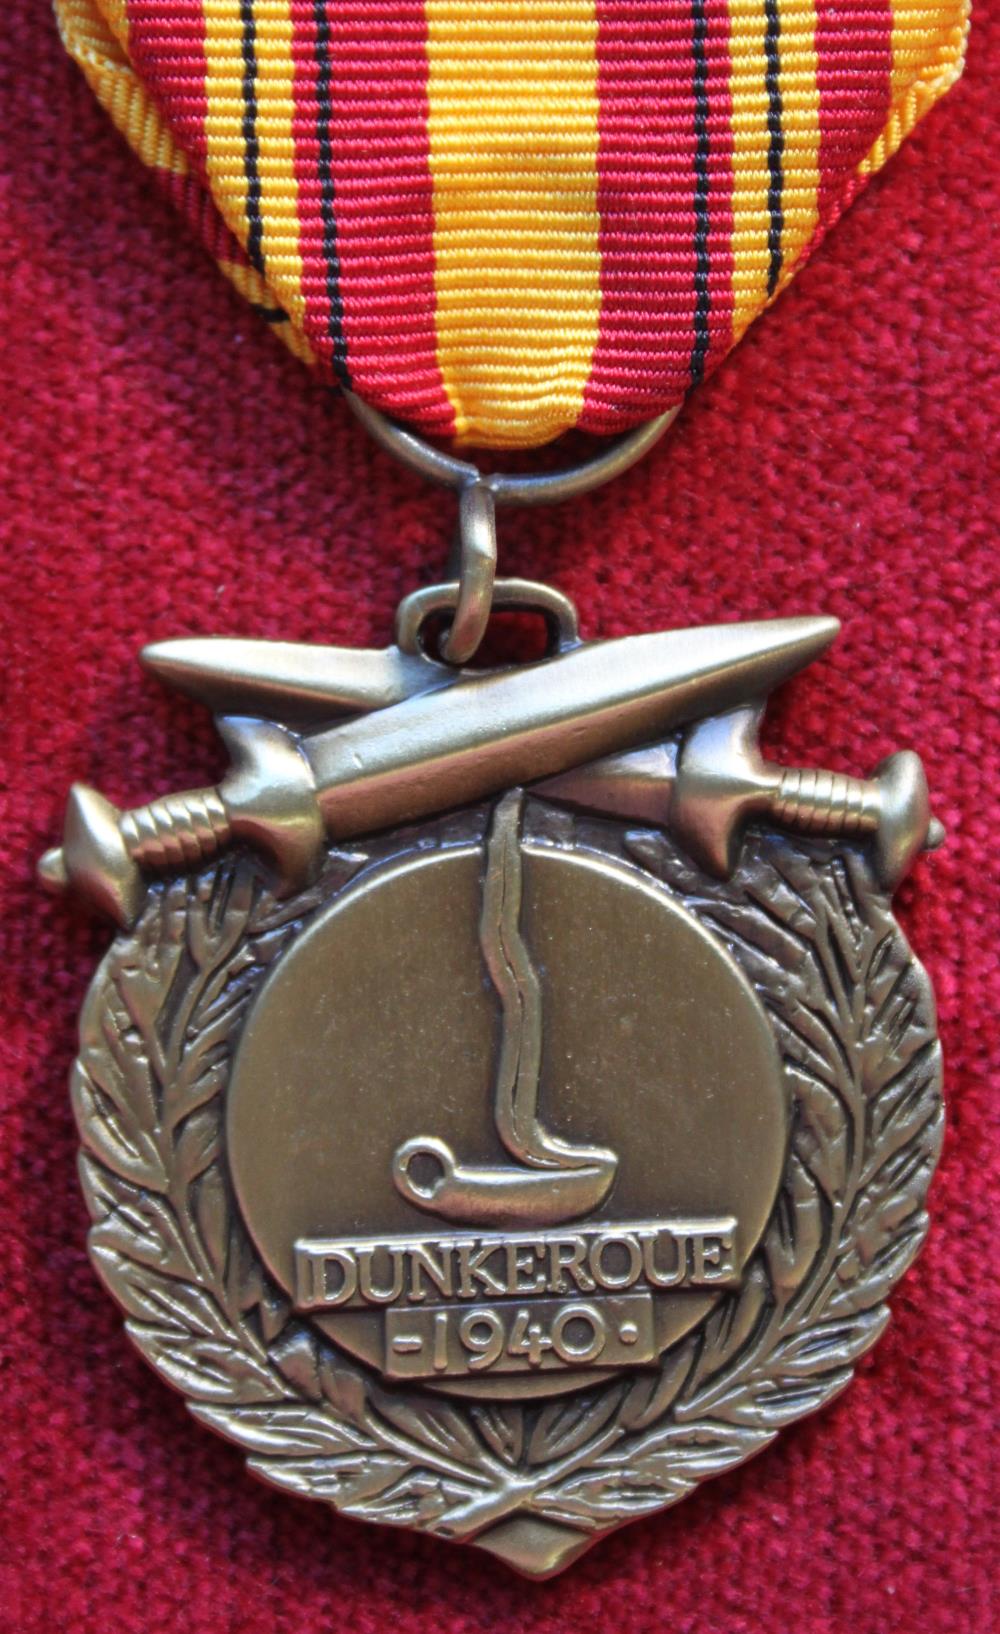 France - Dunkirk Medal